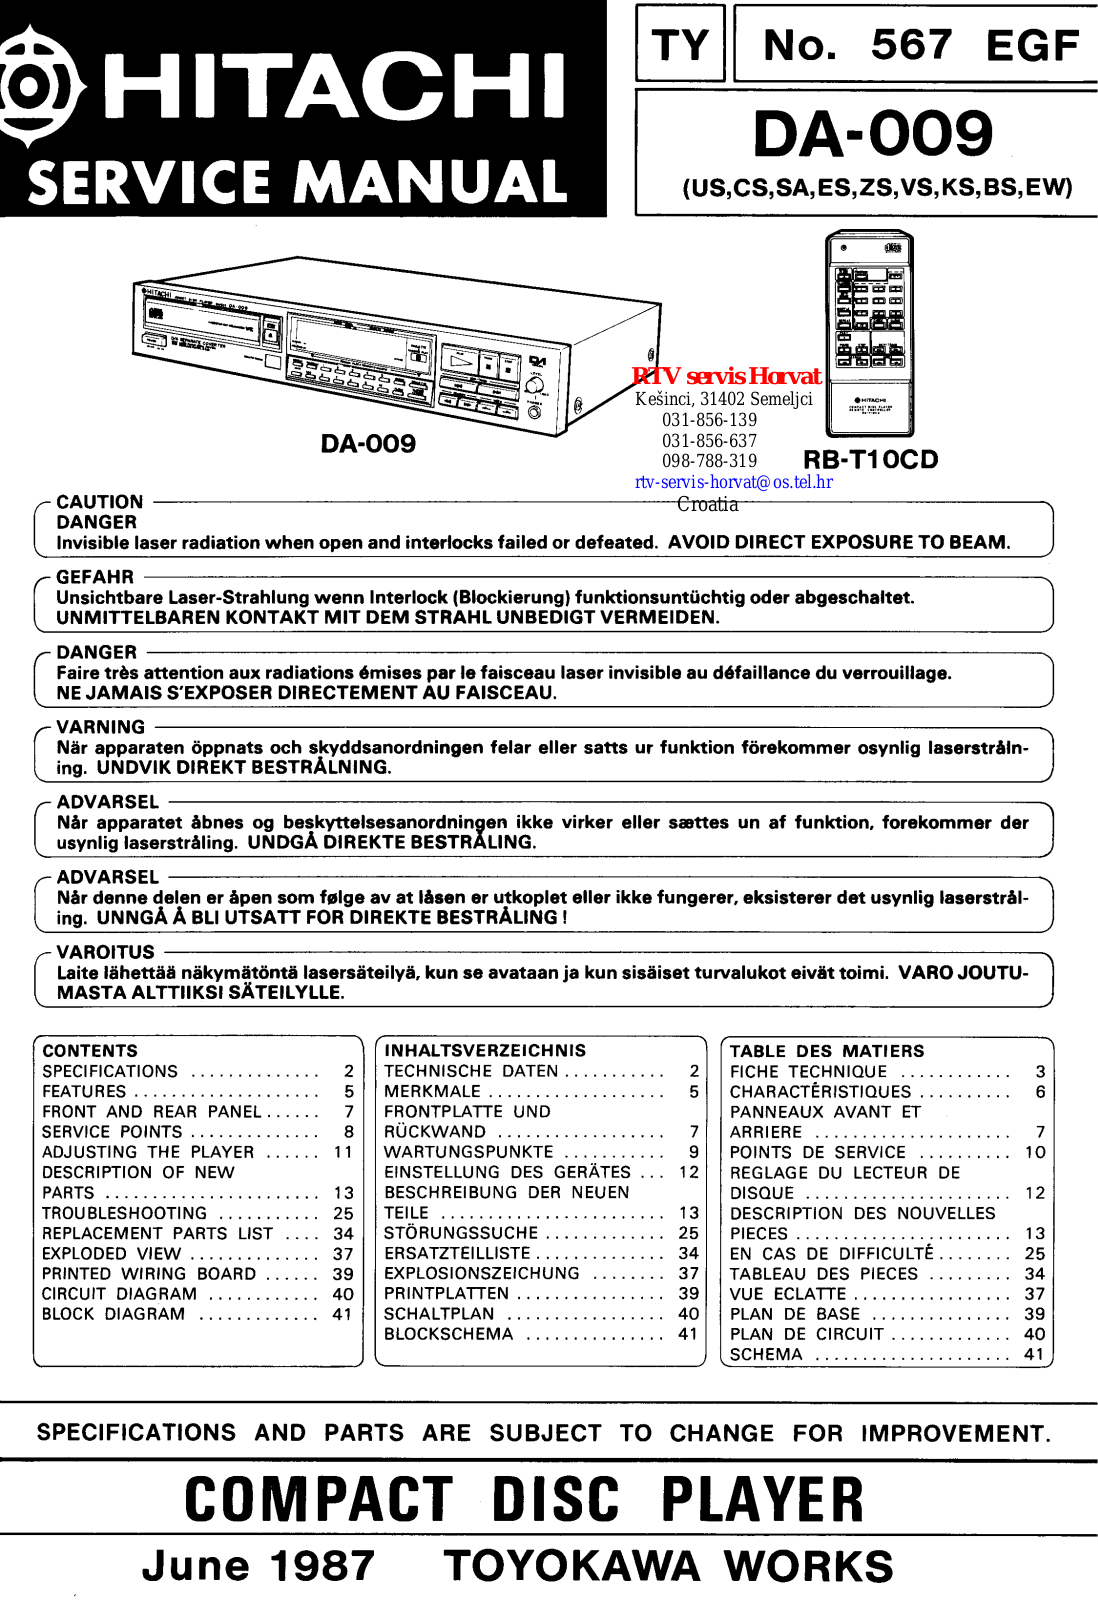 Hitachi DA-009 Service manual